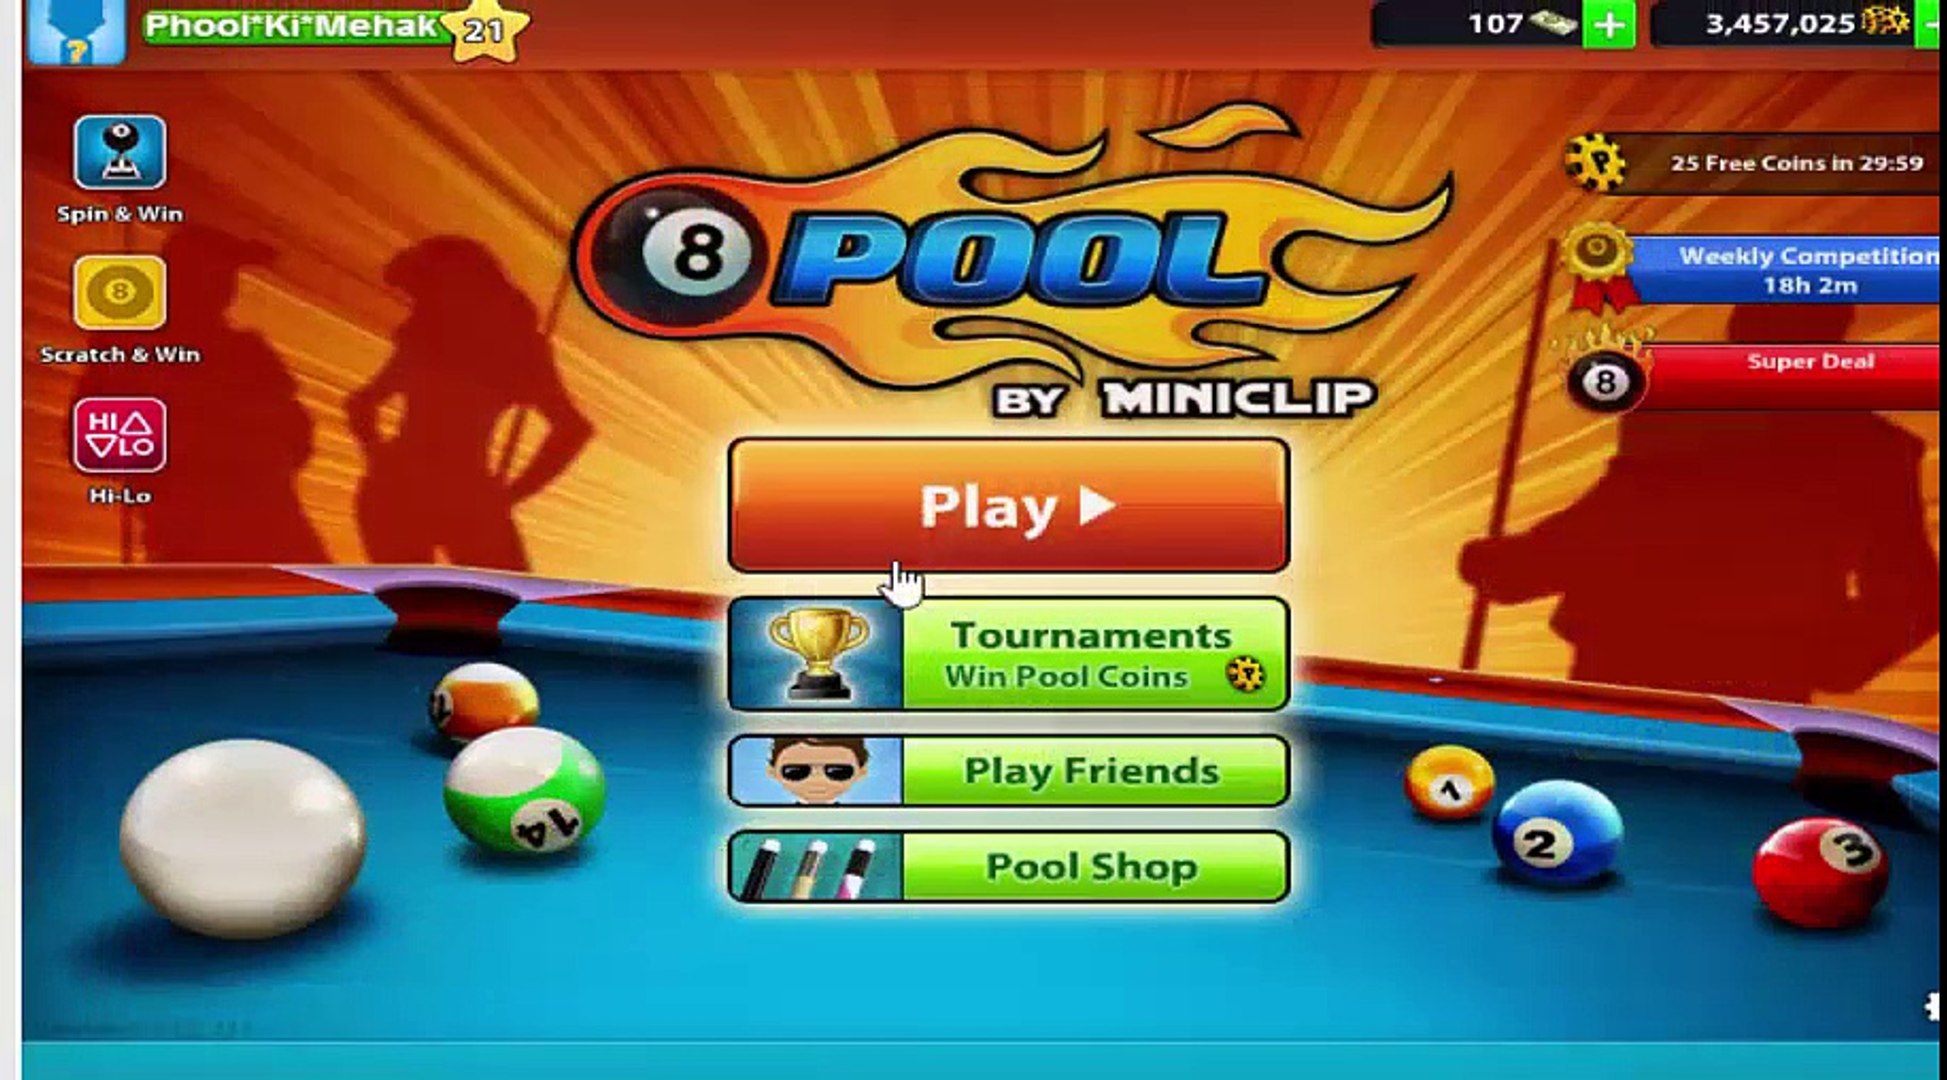 How to challenge Bangkok on Android 8 Ball Pool - 